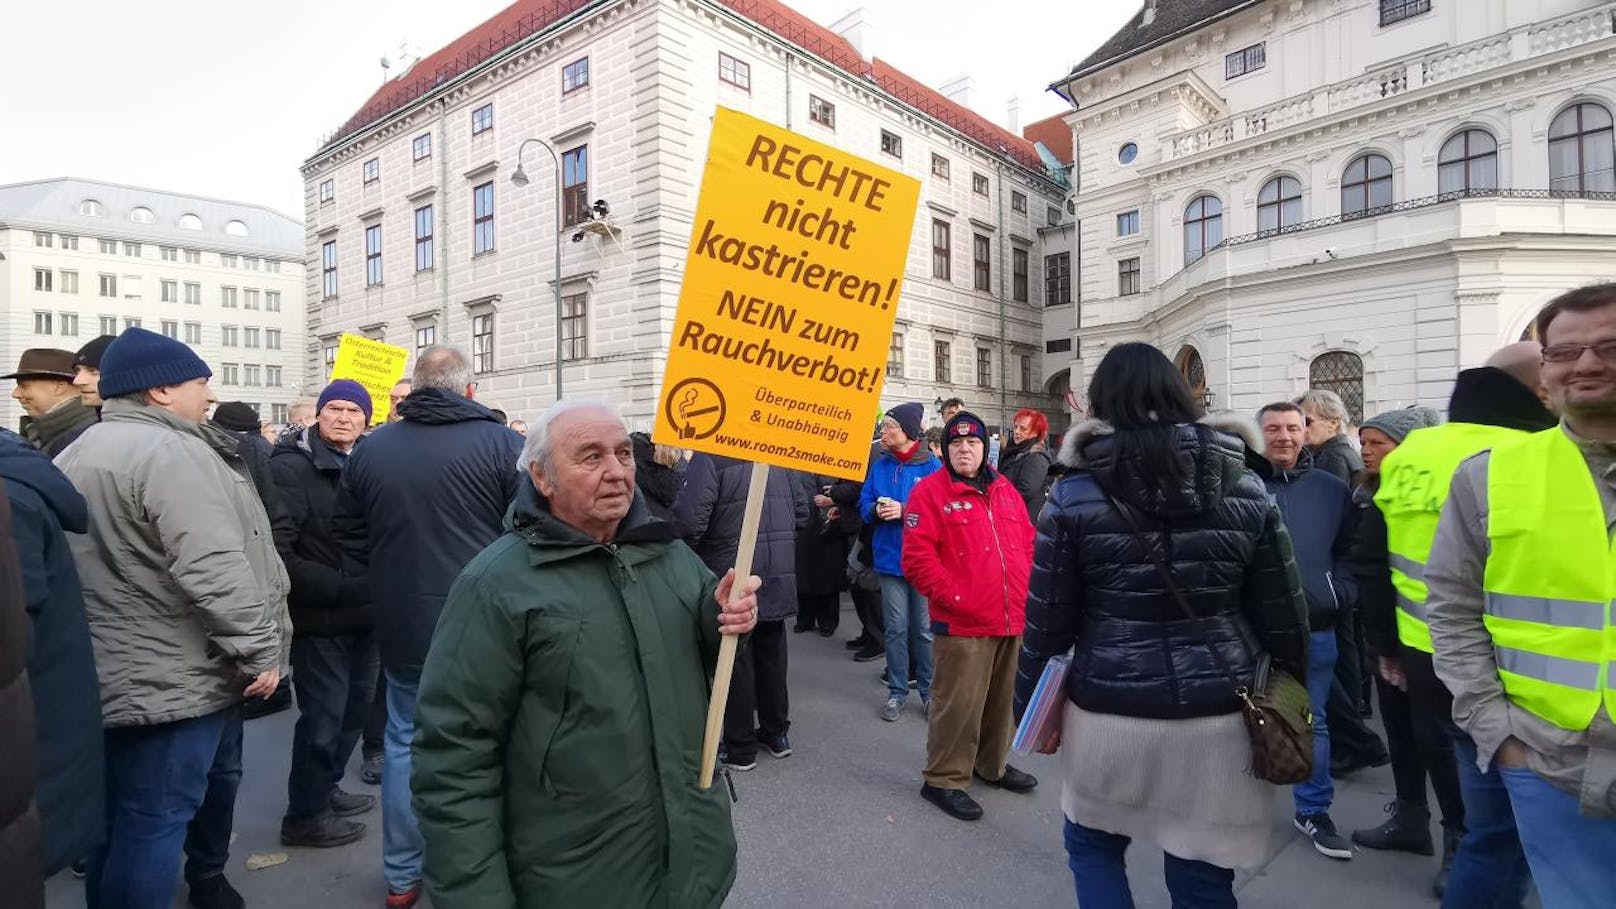 Am Samstag trafen sich Hunderte Demonstranten in der Wiener Innenstadt um vor dem Kanzleramt am Ballhausplatz gegen das Rauchverbot zu protestieren.